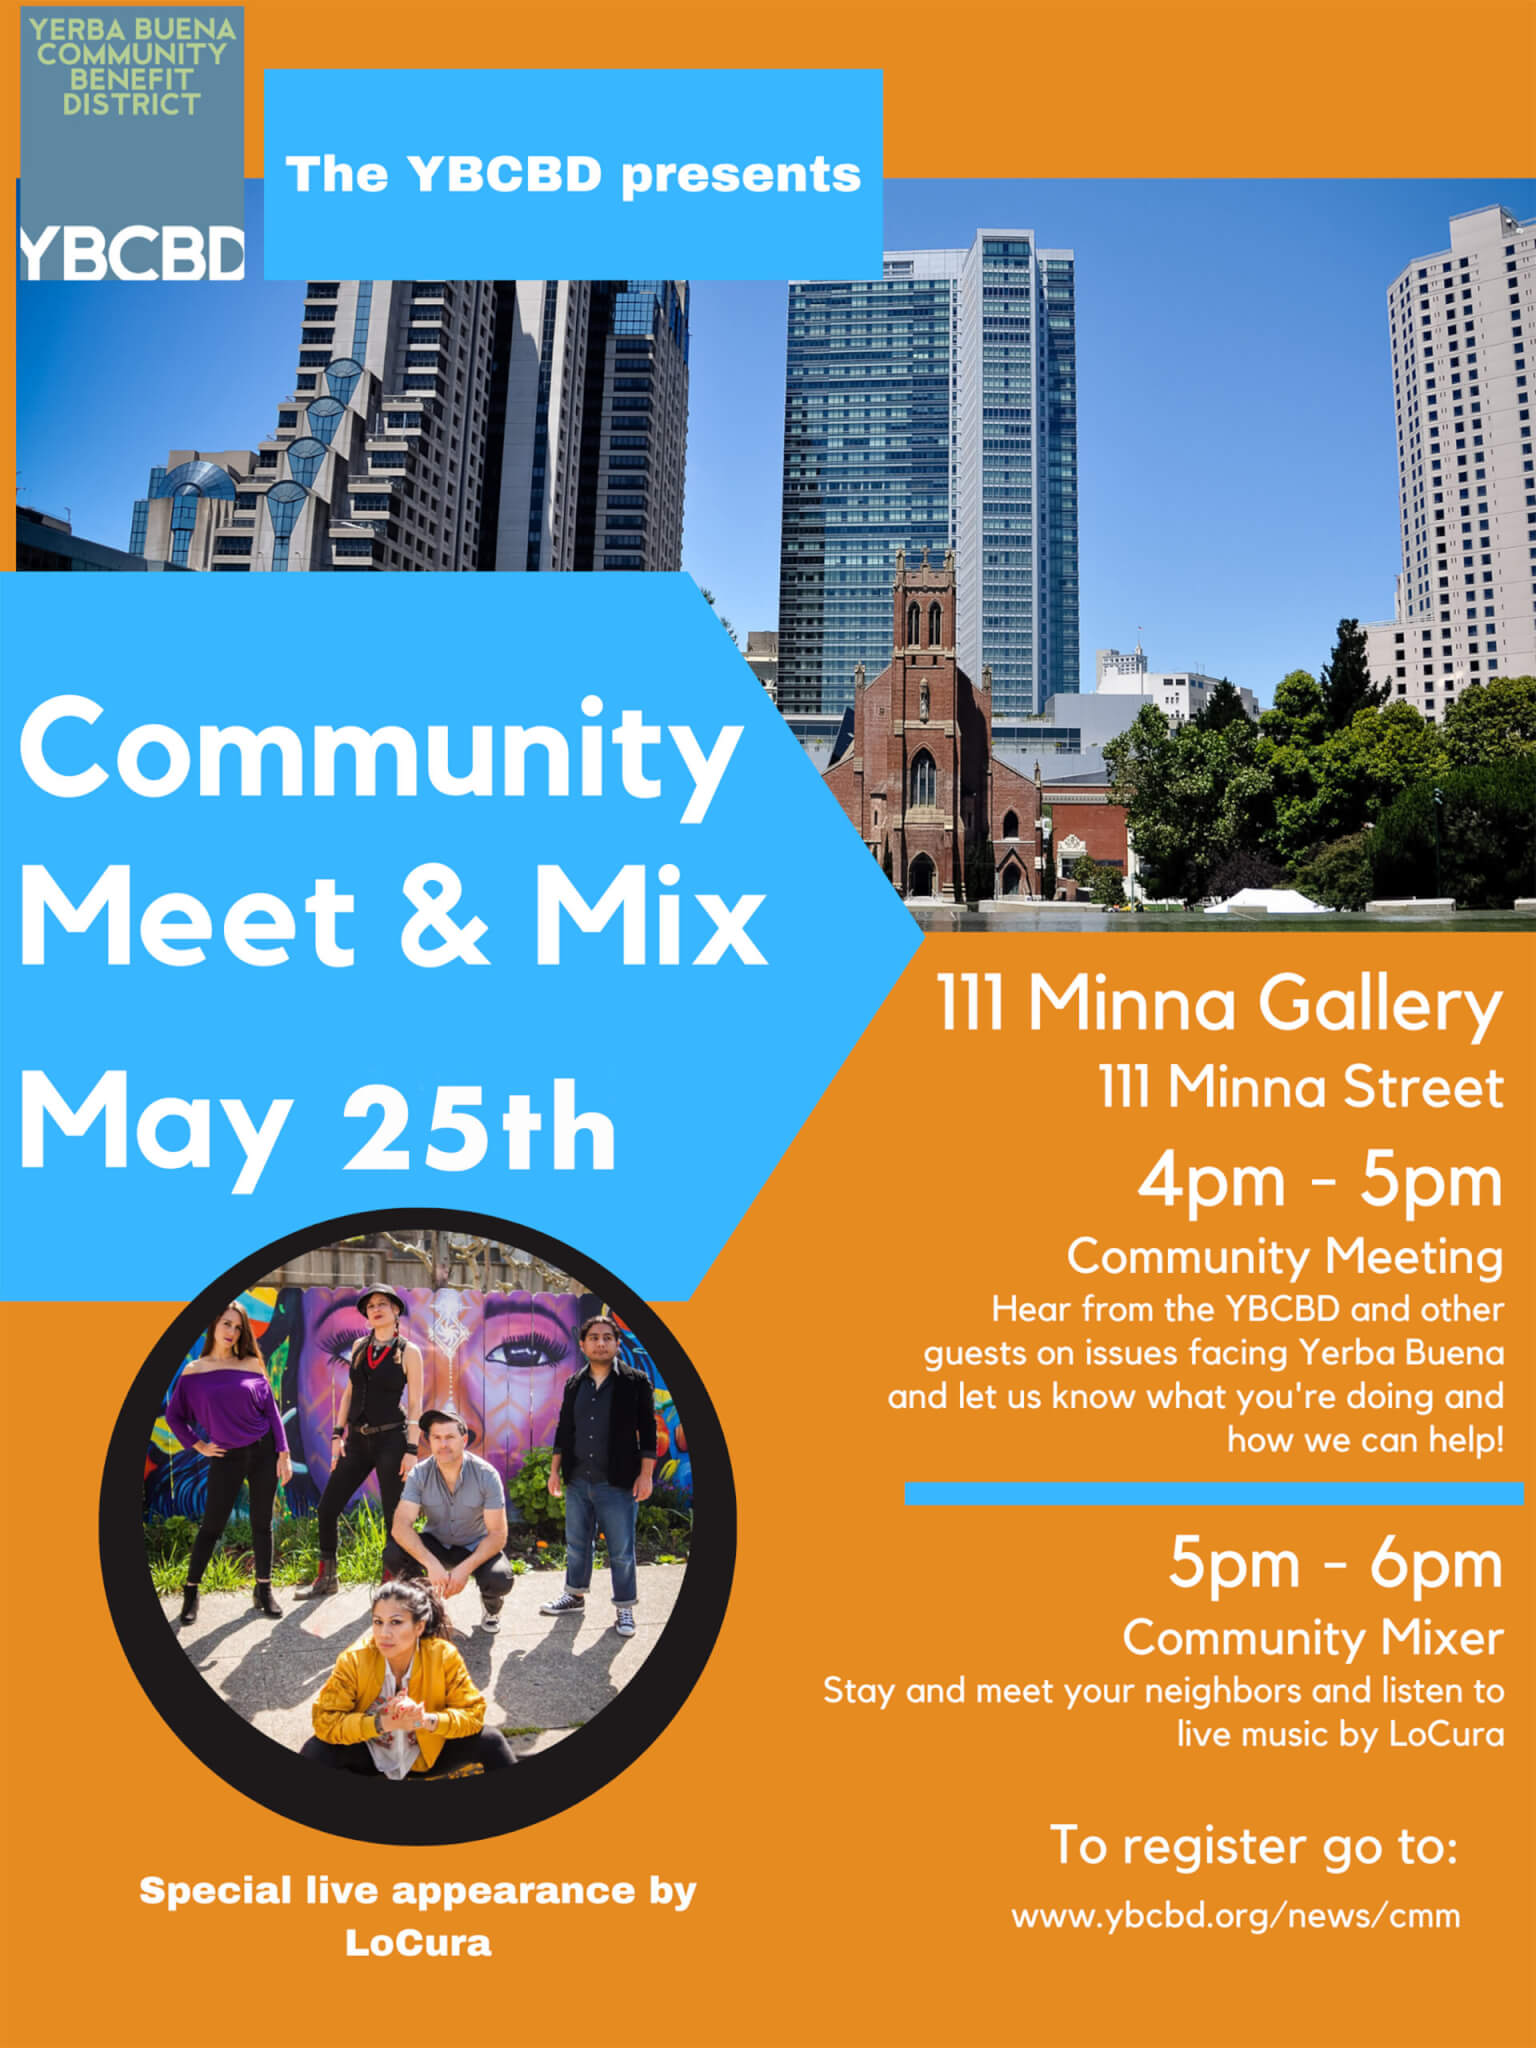 May 25th: Yerba Buena Community Meet & Mix